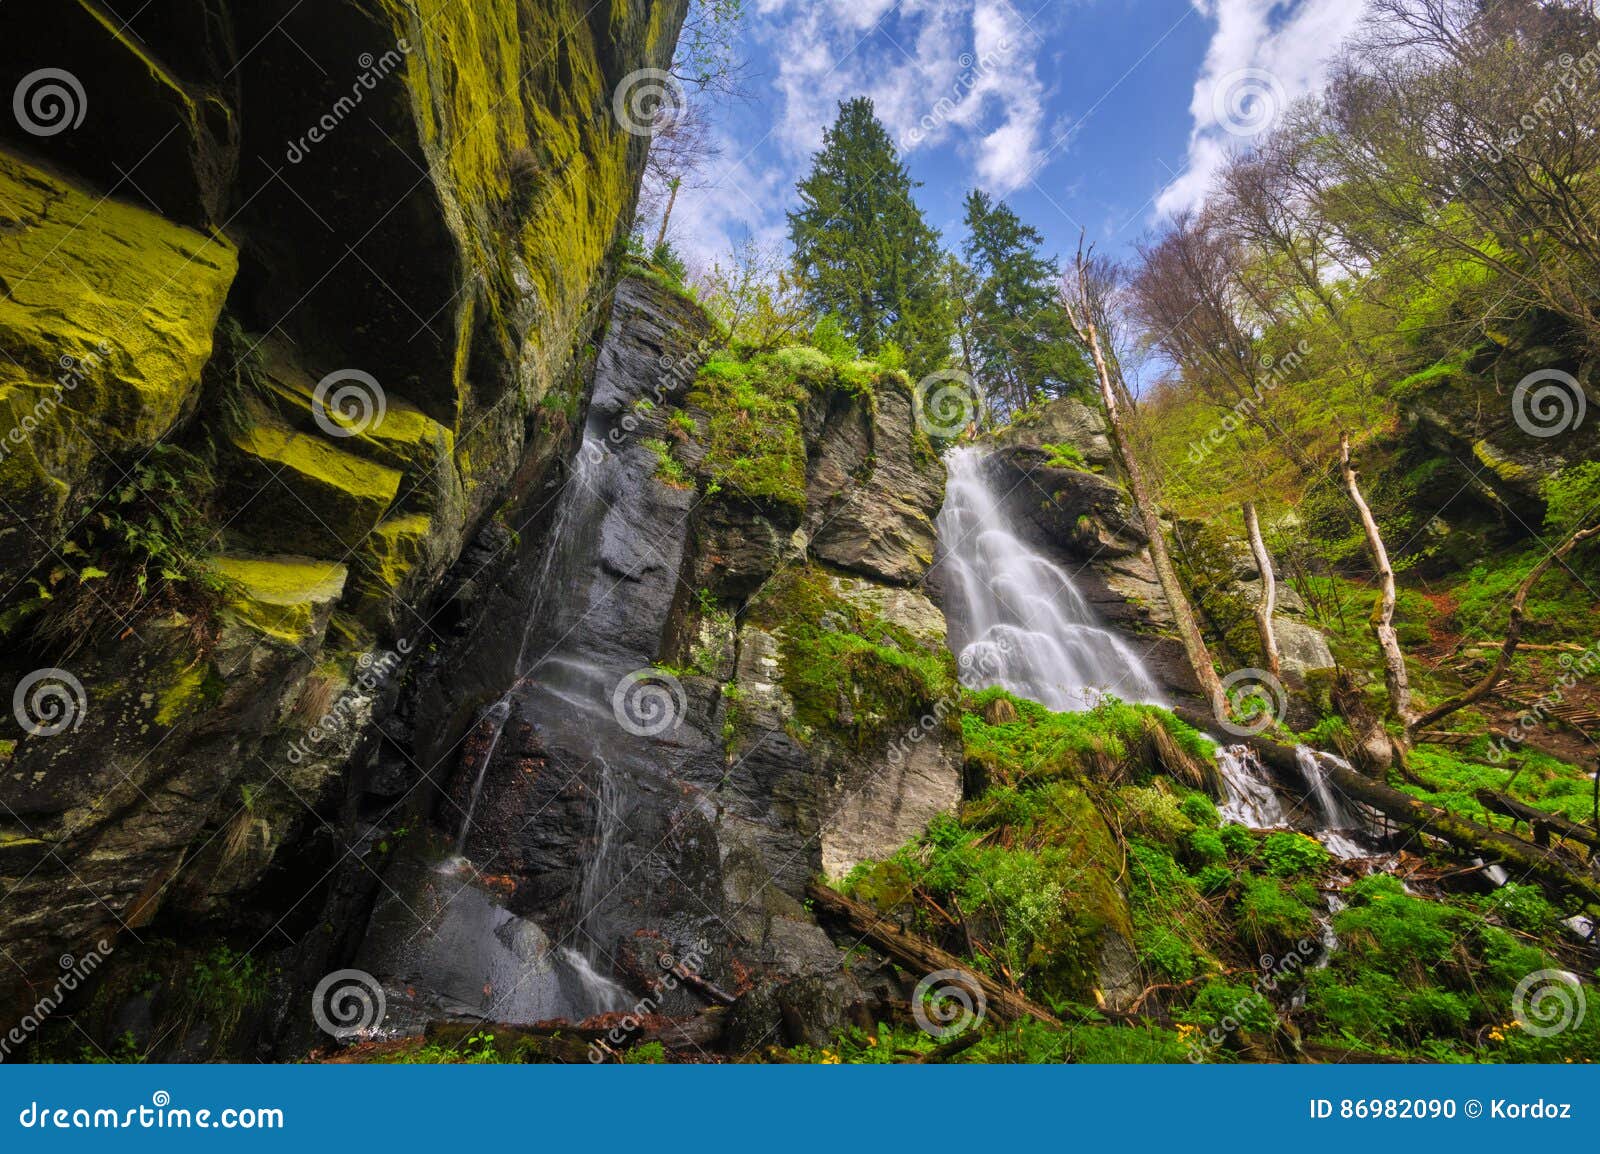 vodopad bystre waterfall